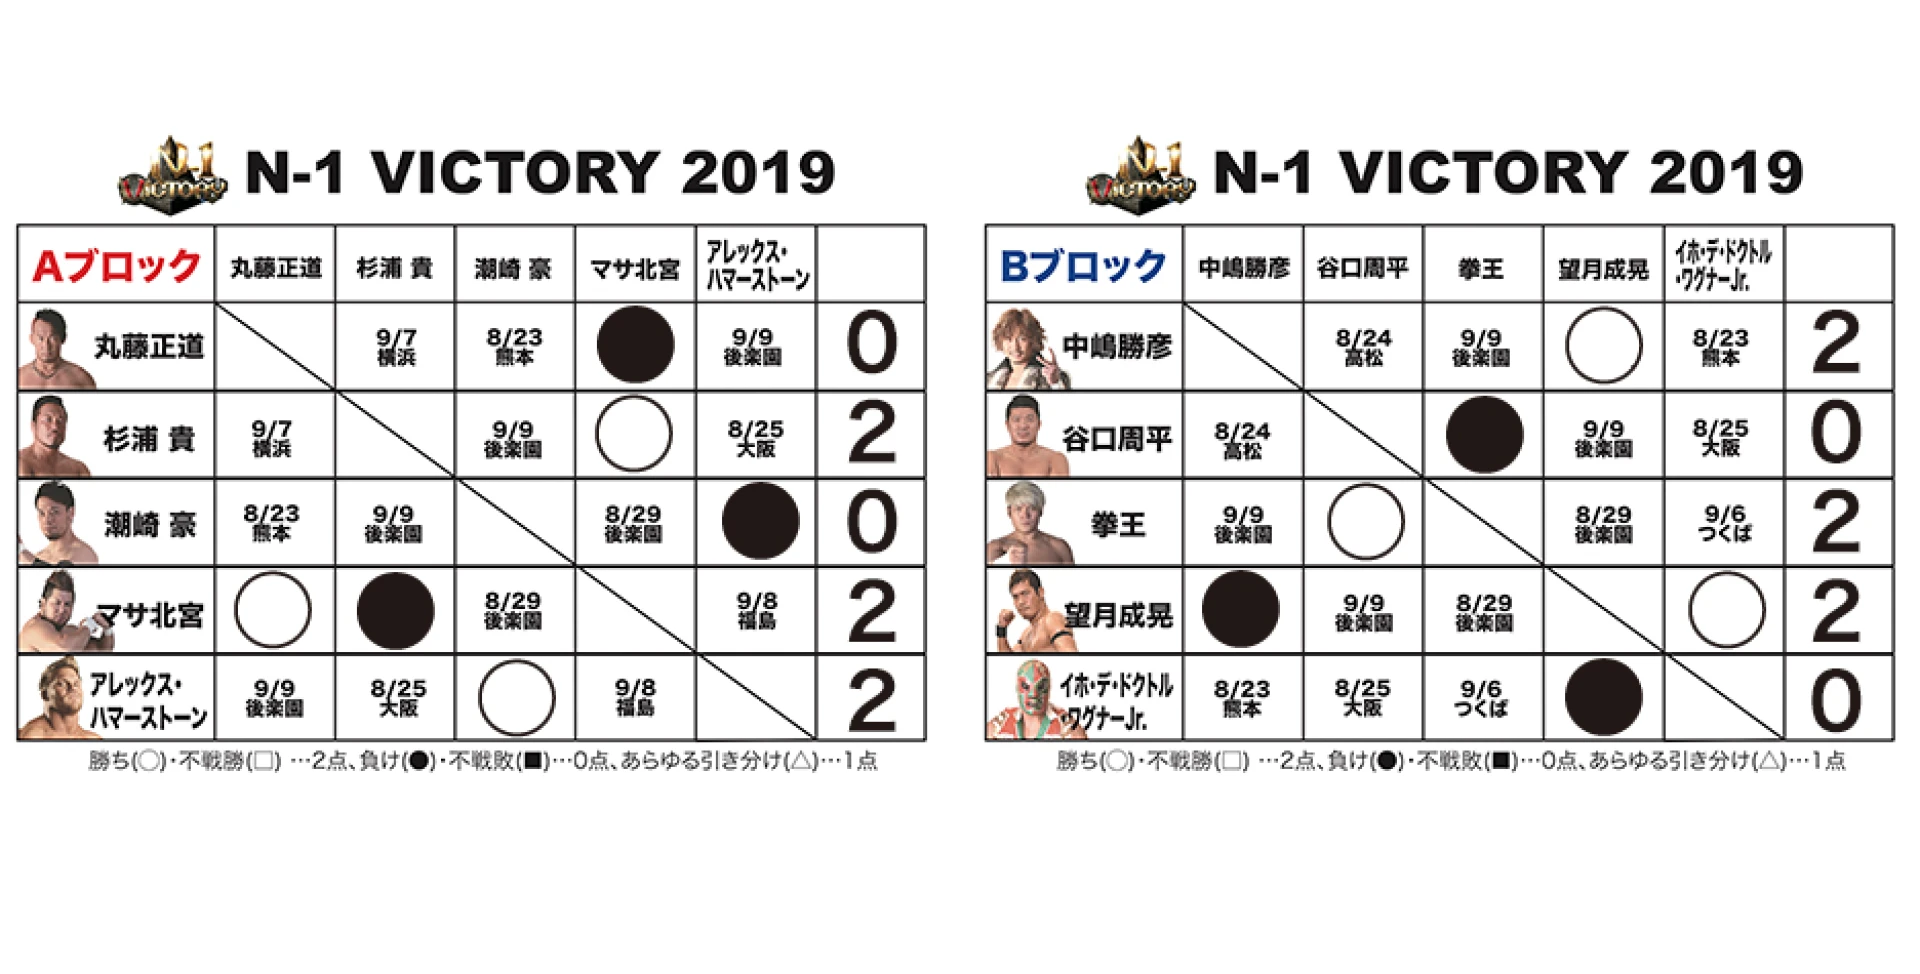 【8.21大分大会終了時の得点状況】『N-1 VICTORY 2019』得点表